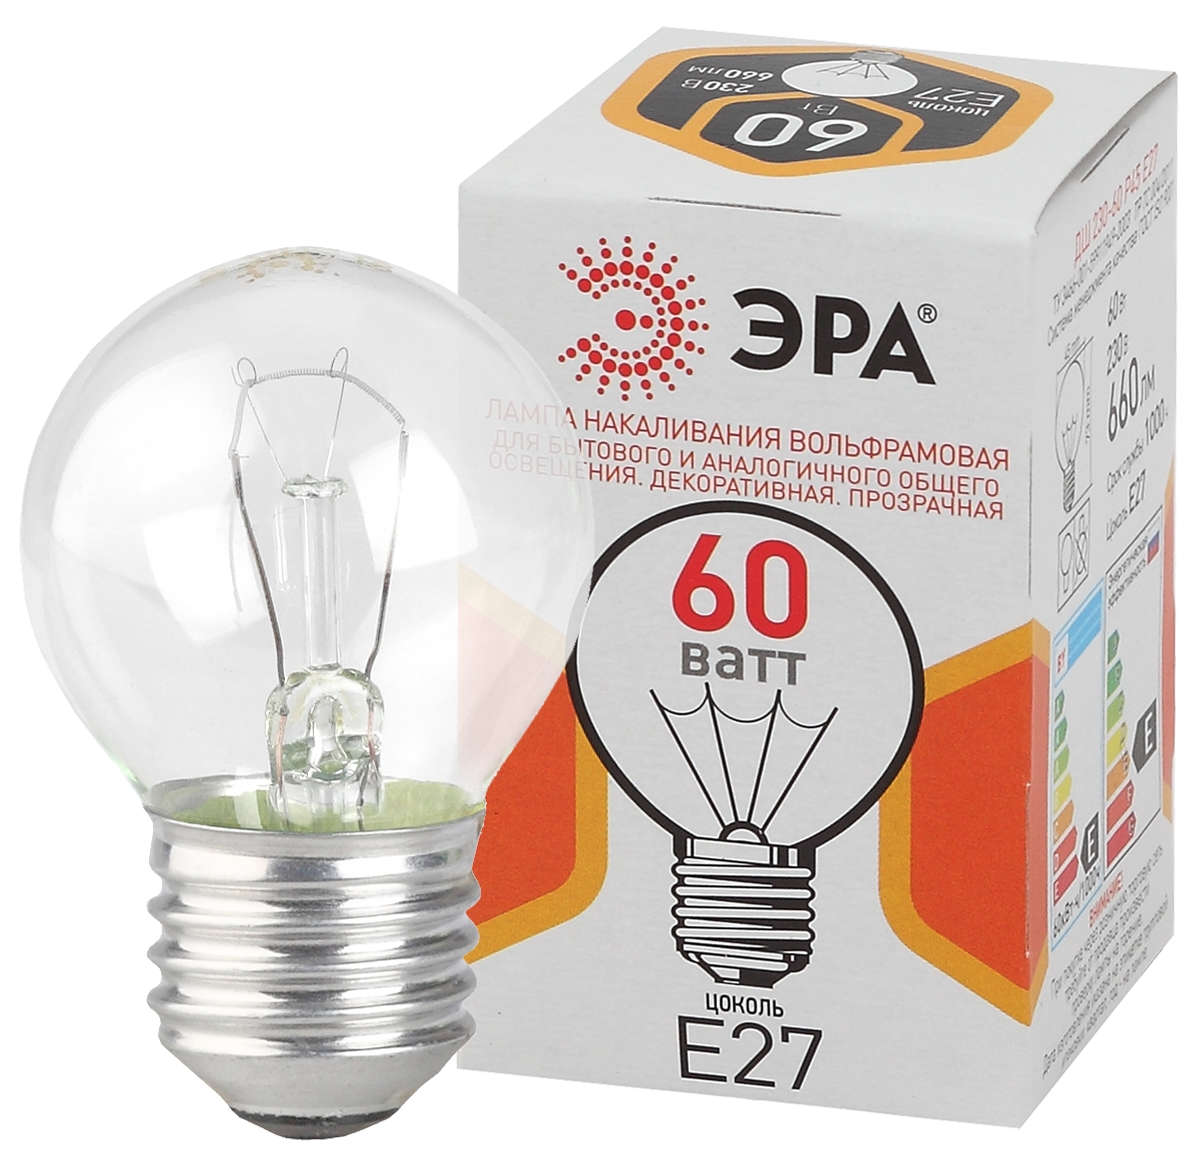 Лампочка ЭРА P45 60Вт Е27 / E27 230В шар прозрачный цветная упаковка